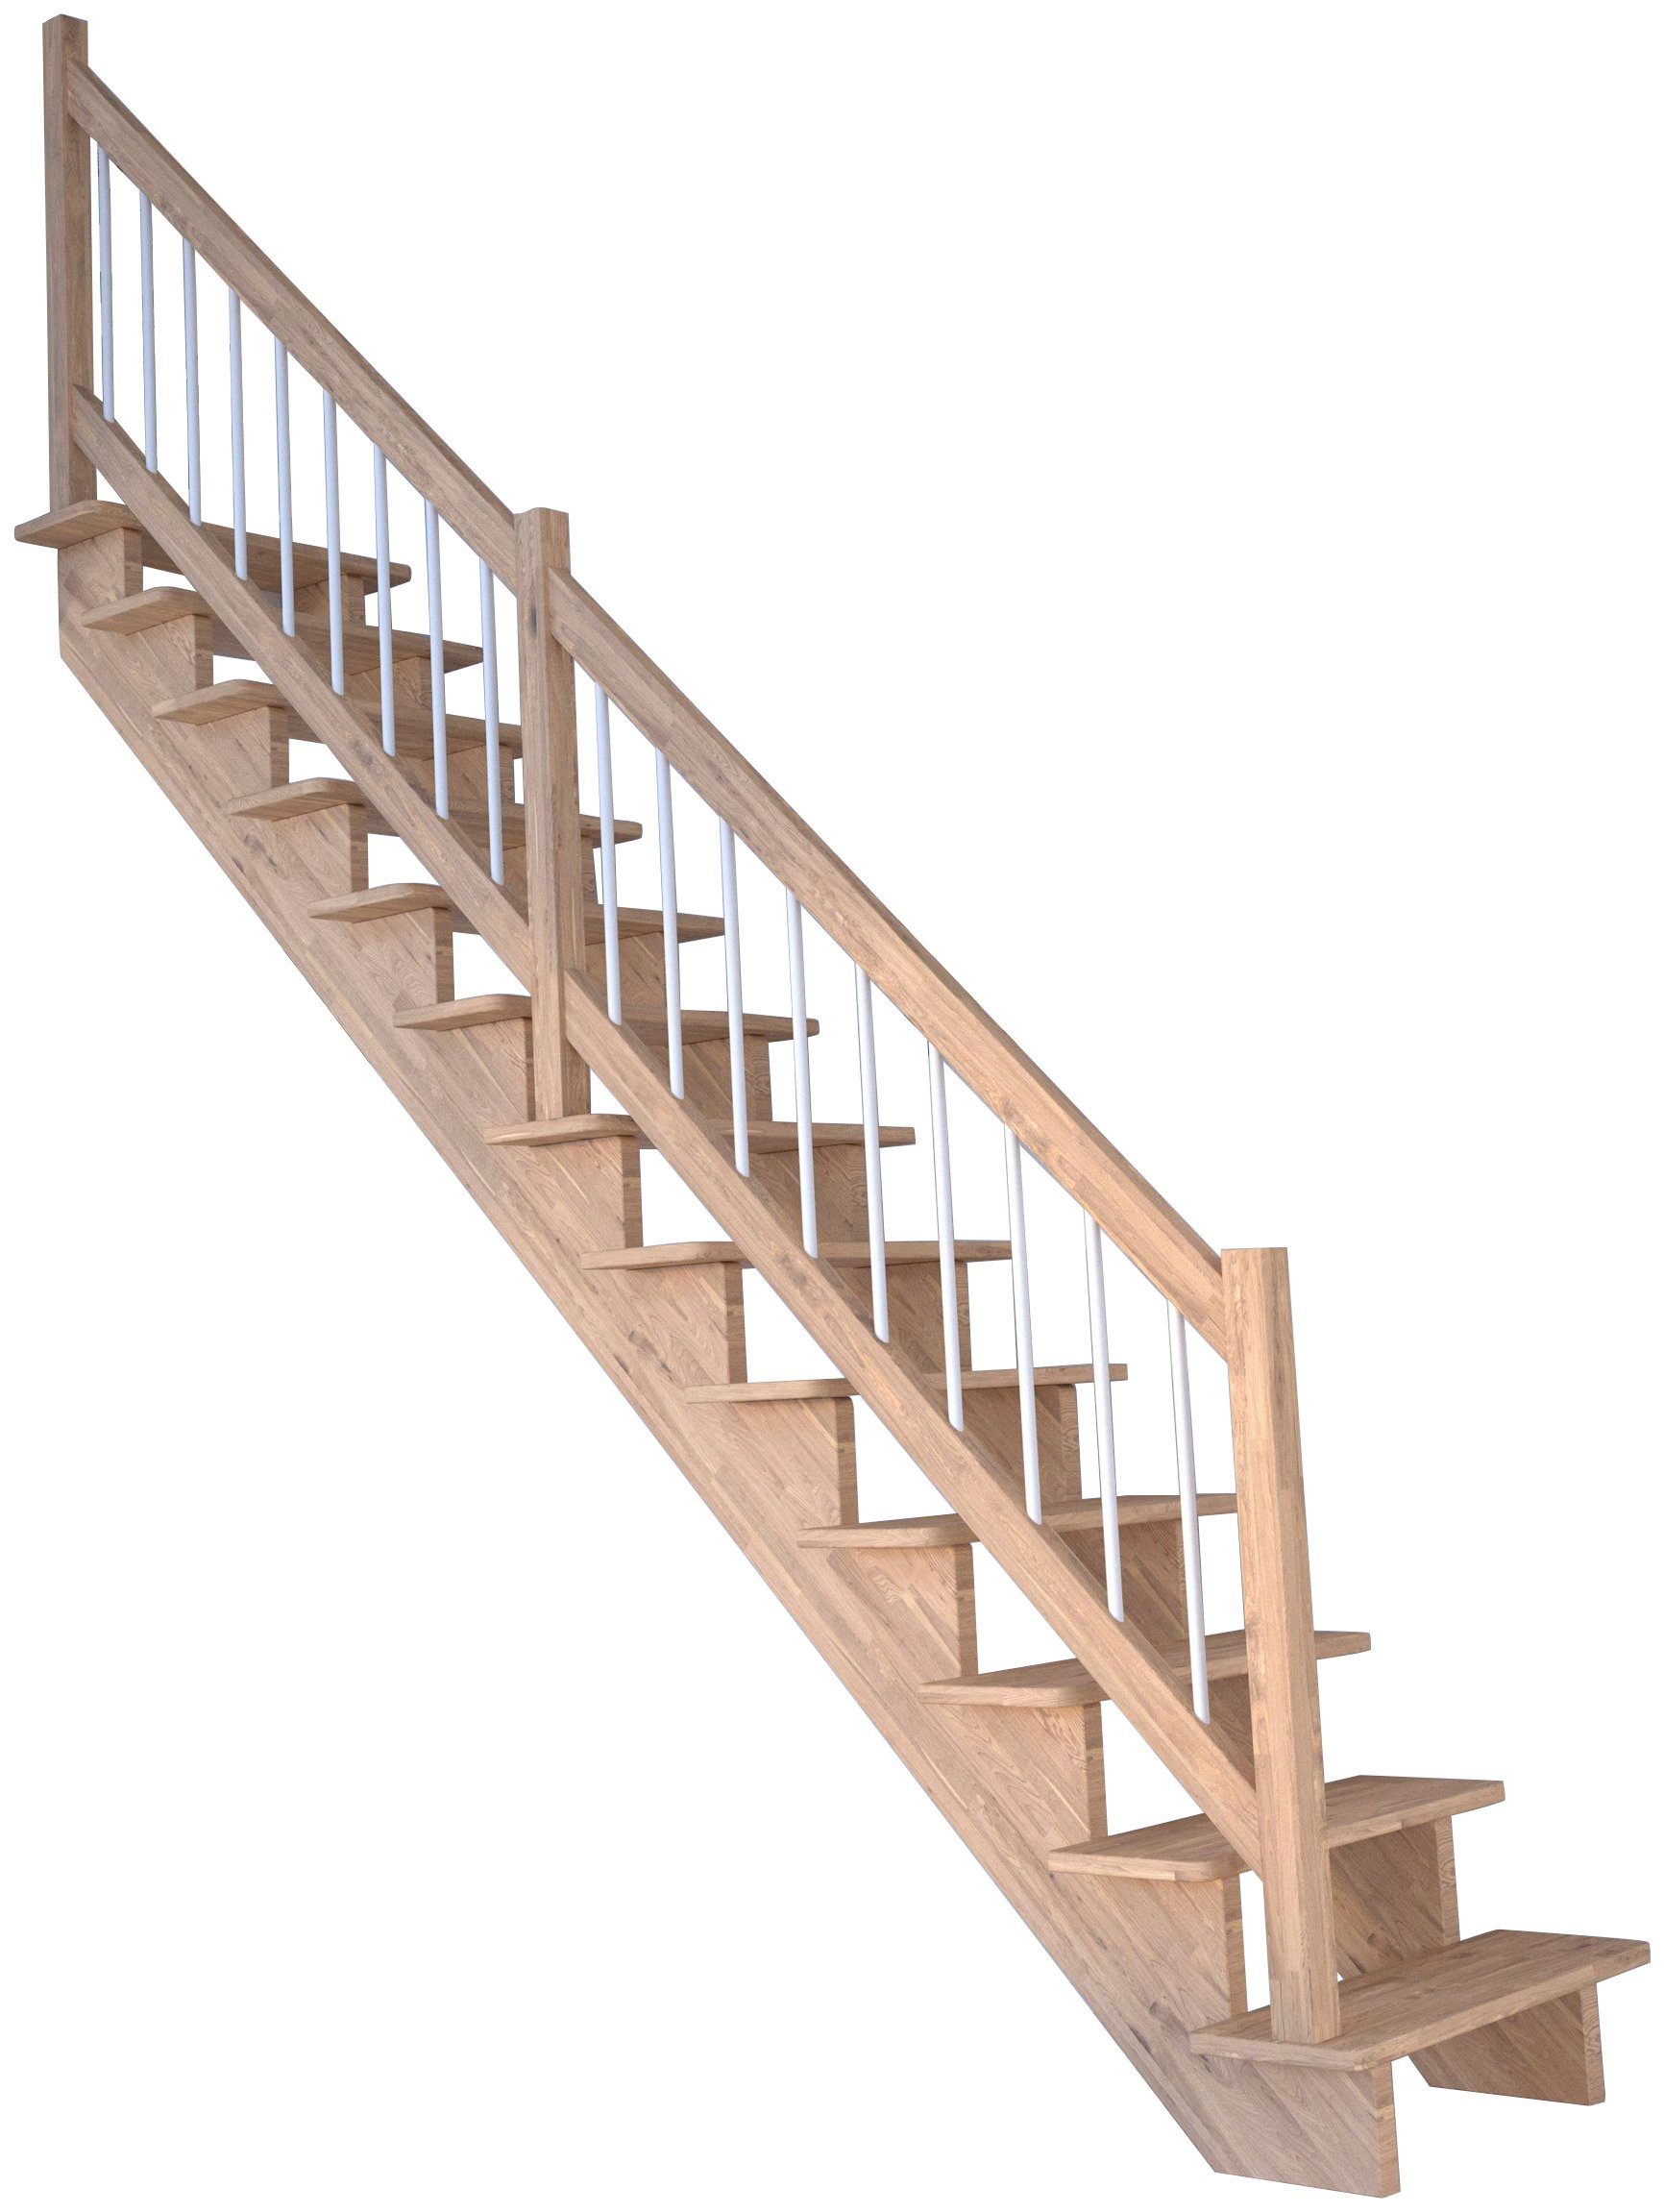 Geschosshöhen Stufen Weiß, Lindos, Systemtreppe Starwood cm, Durchgehende Holz-Edelstahl bis 300 offen, Massivholz Wangenteile für